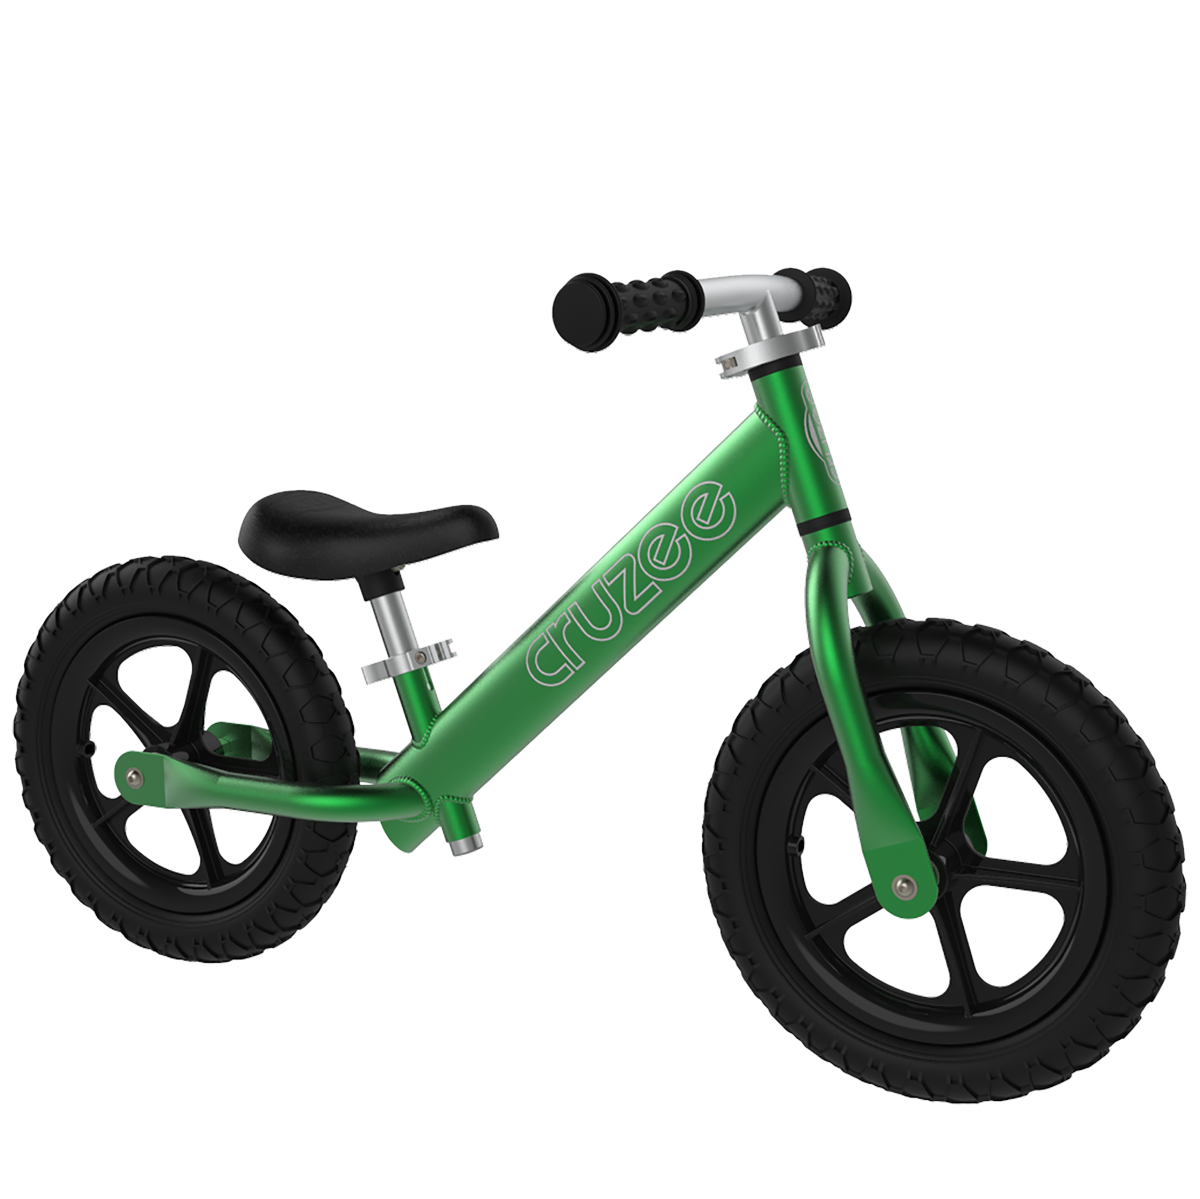 CRUZEE guralica – bicikl bez pedala – Green